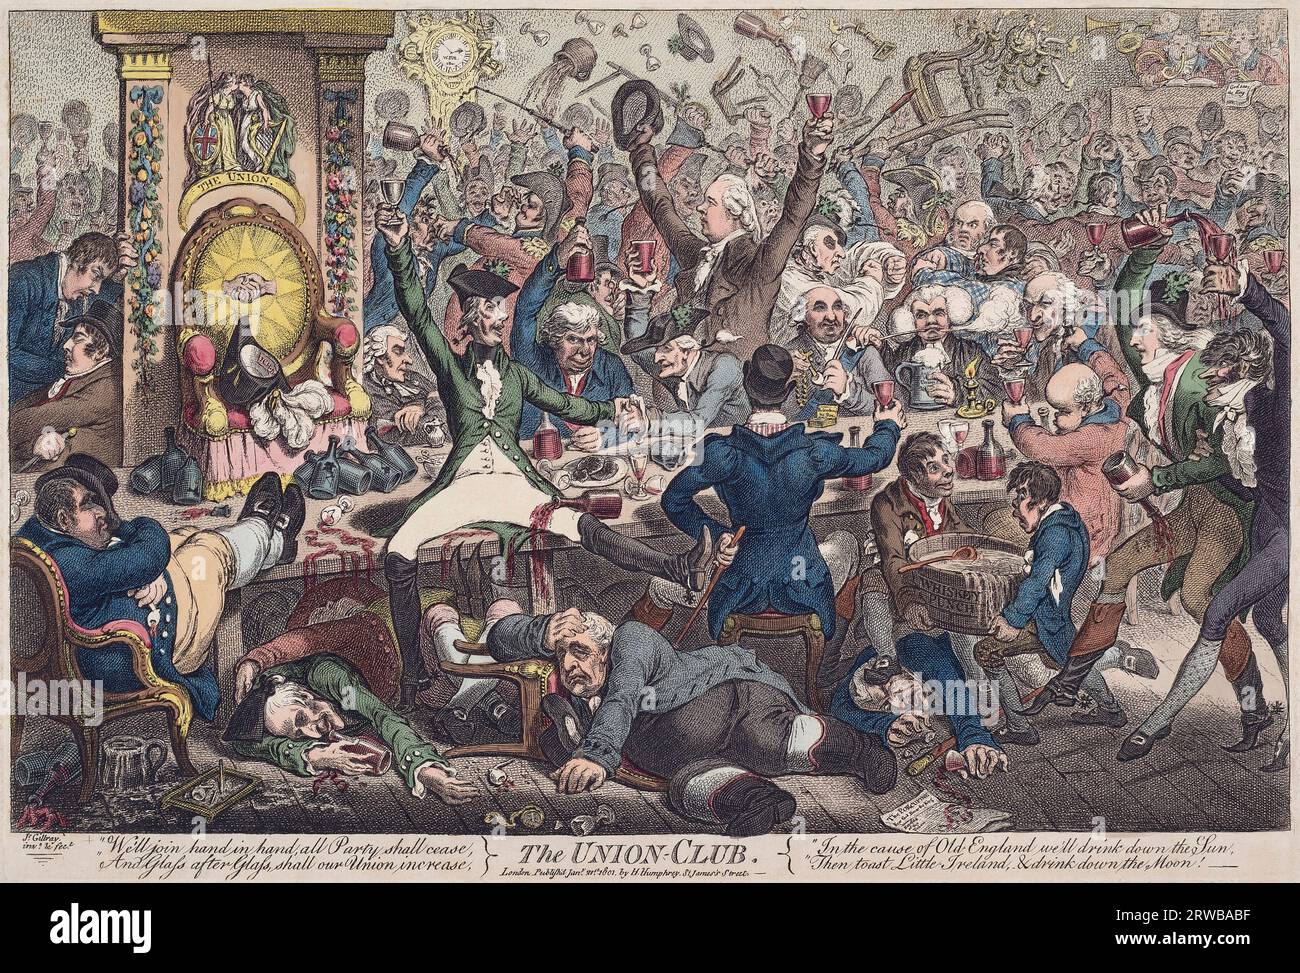 Der Union Club. Eine Satire von James Gillray aus dem Jahr 1801 über die Auswirkungen der Akte der Union 1800, als die Parlamente Großbritanniens und Irlands zum Parlament des Vereinigten Königreichs zusammenschlossen. Die Scheinbonhomie im Vordergrund zwischen verschiedenen politischen Figuren steht im Kontrast zu der Schlägerei im Hintergrund. Stockfoto